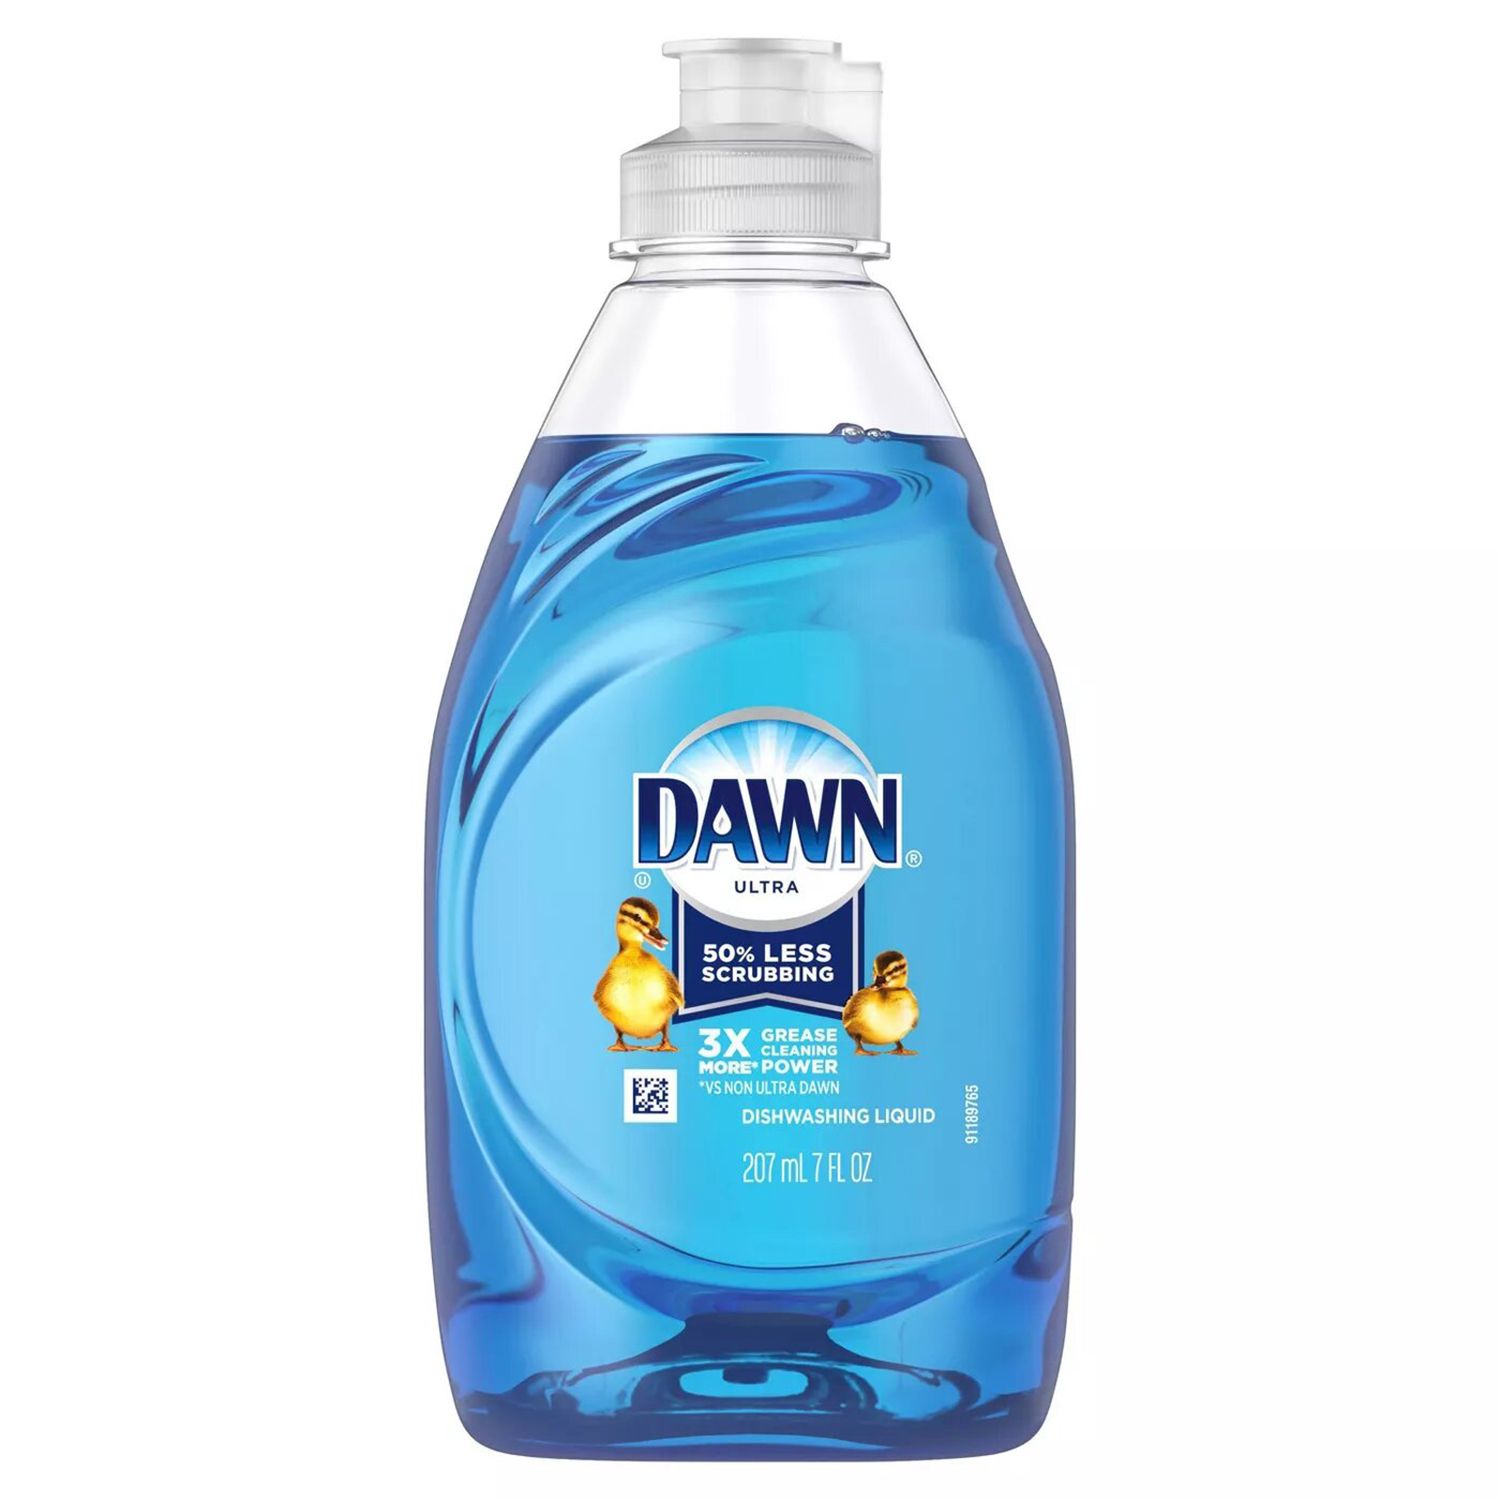 Dawn Ultra Original illatú mosogató folyékony edényszappan